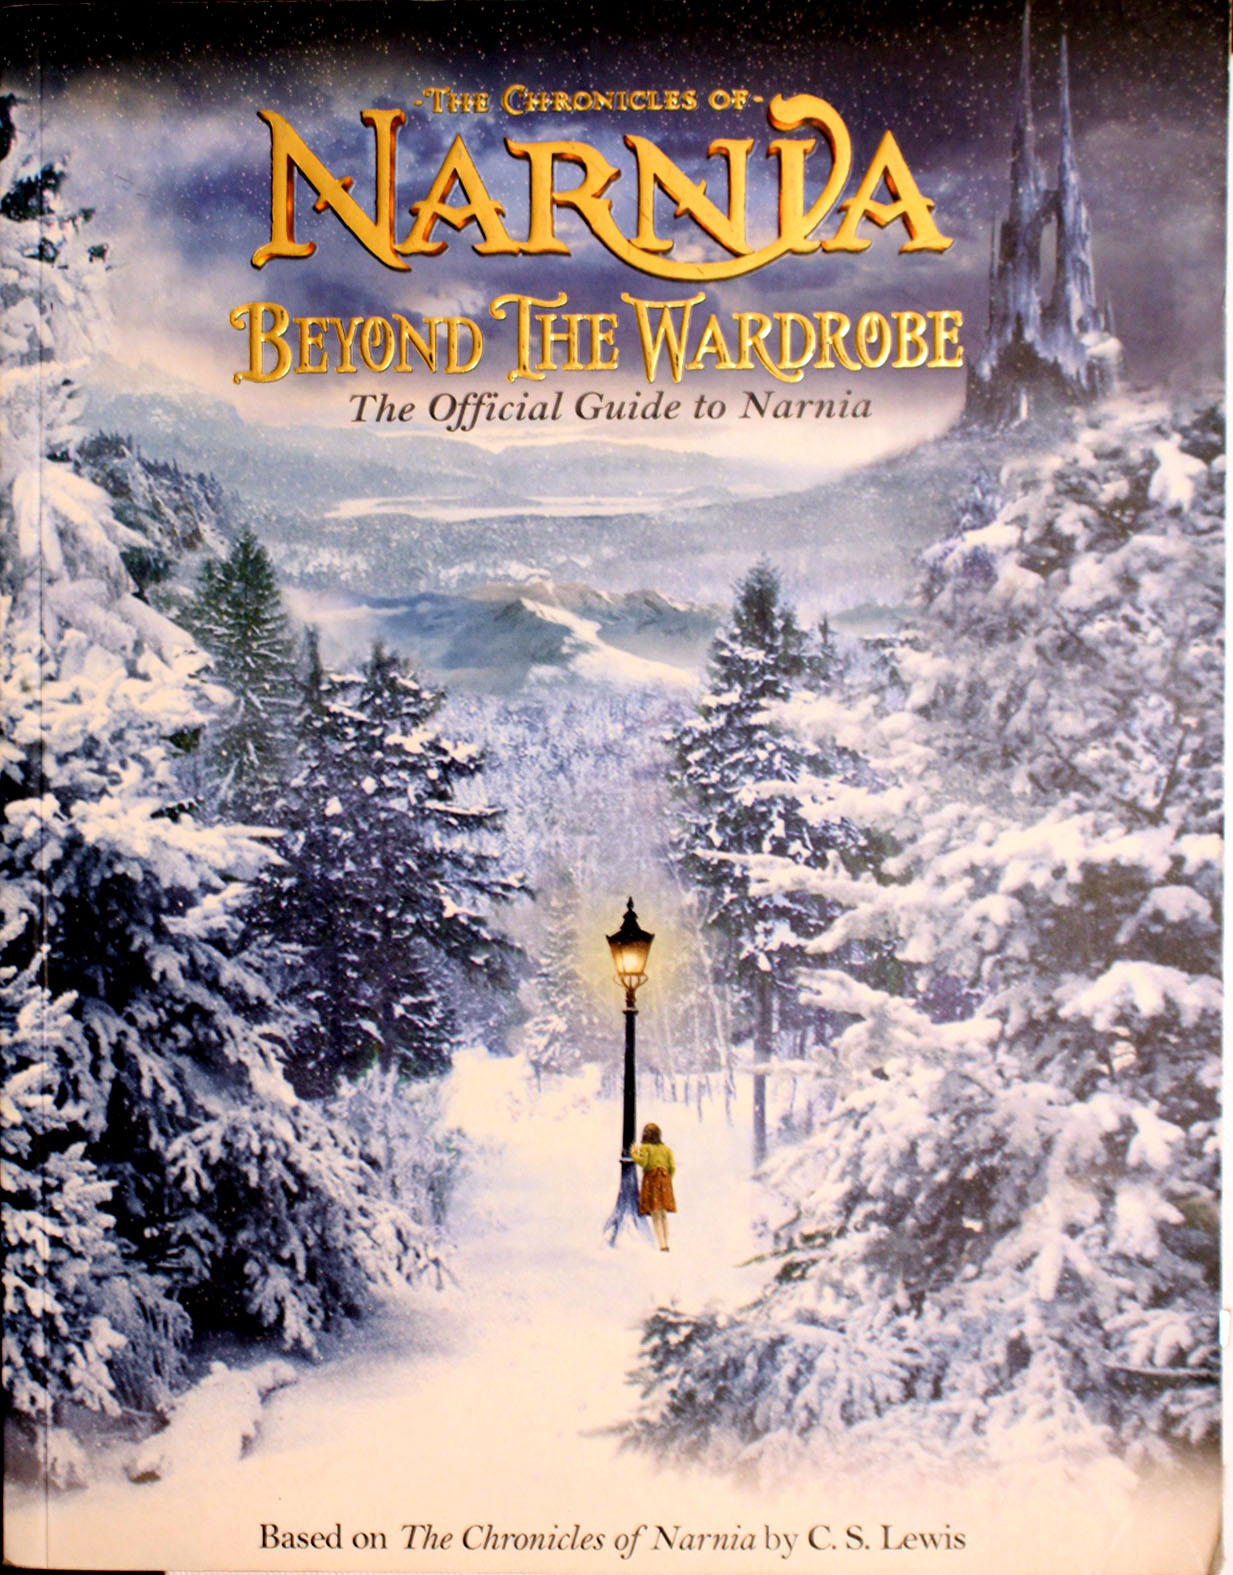 2005 C.S. Lewis: Beyond Narnia